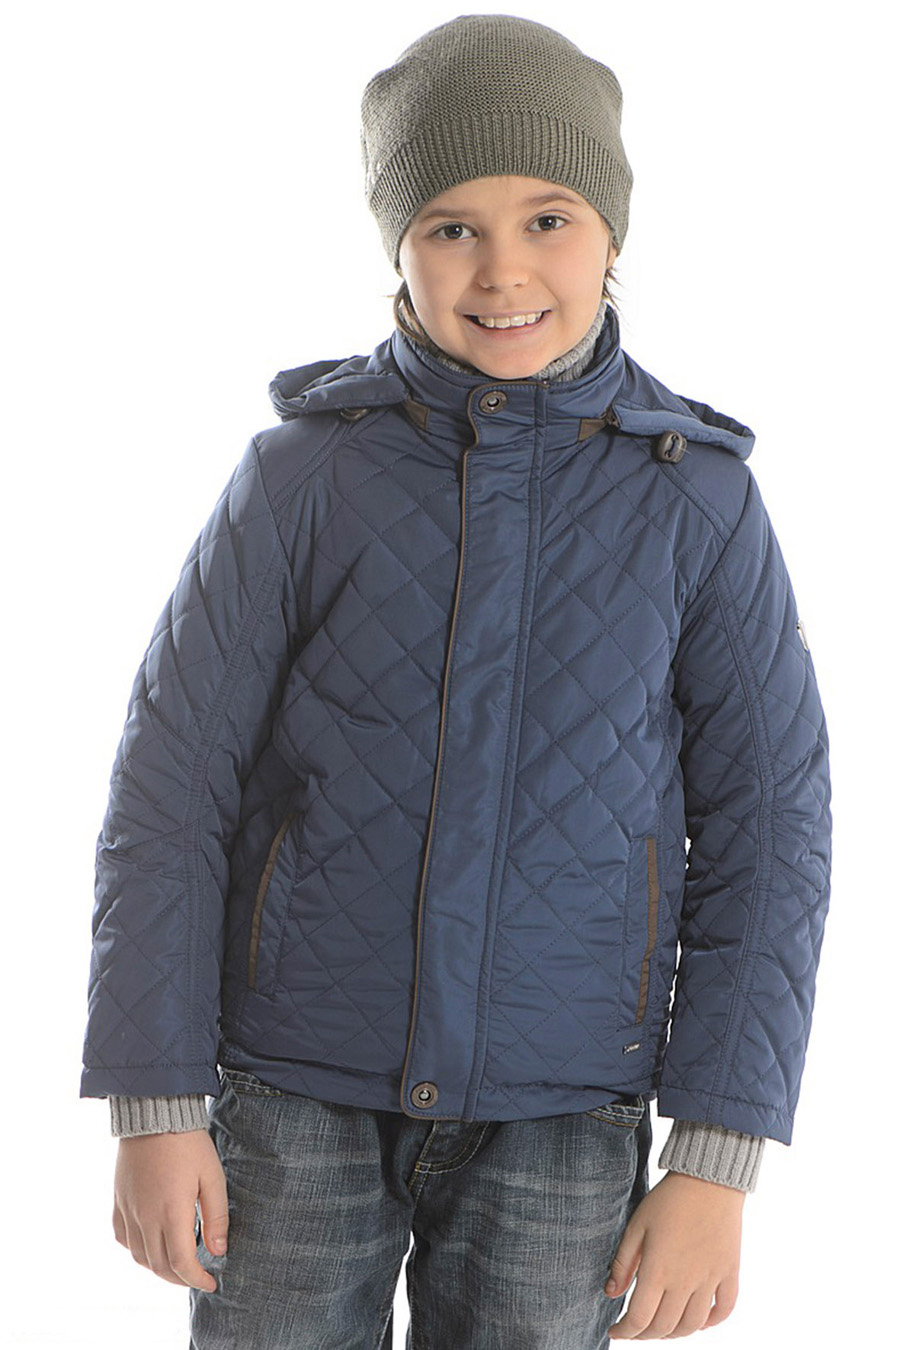 Детская куртка для мальчика (Snowimage Junior)